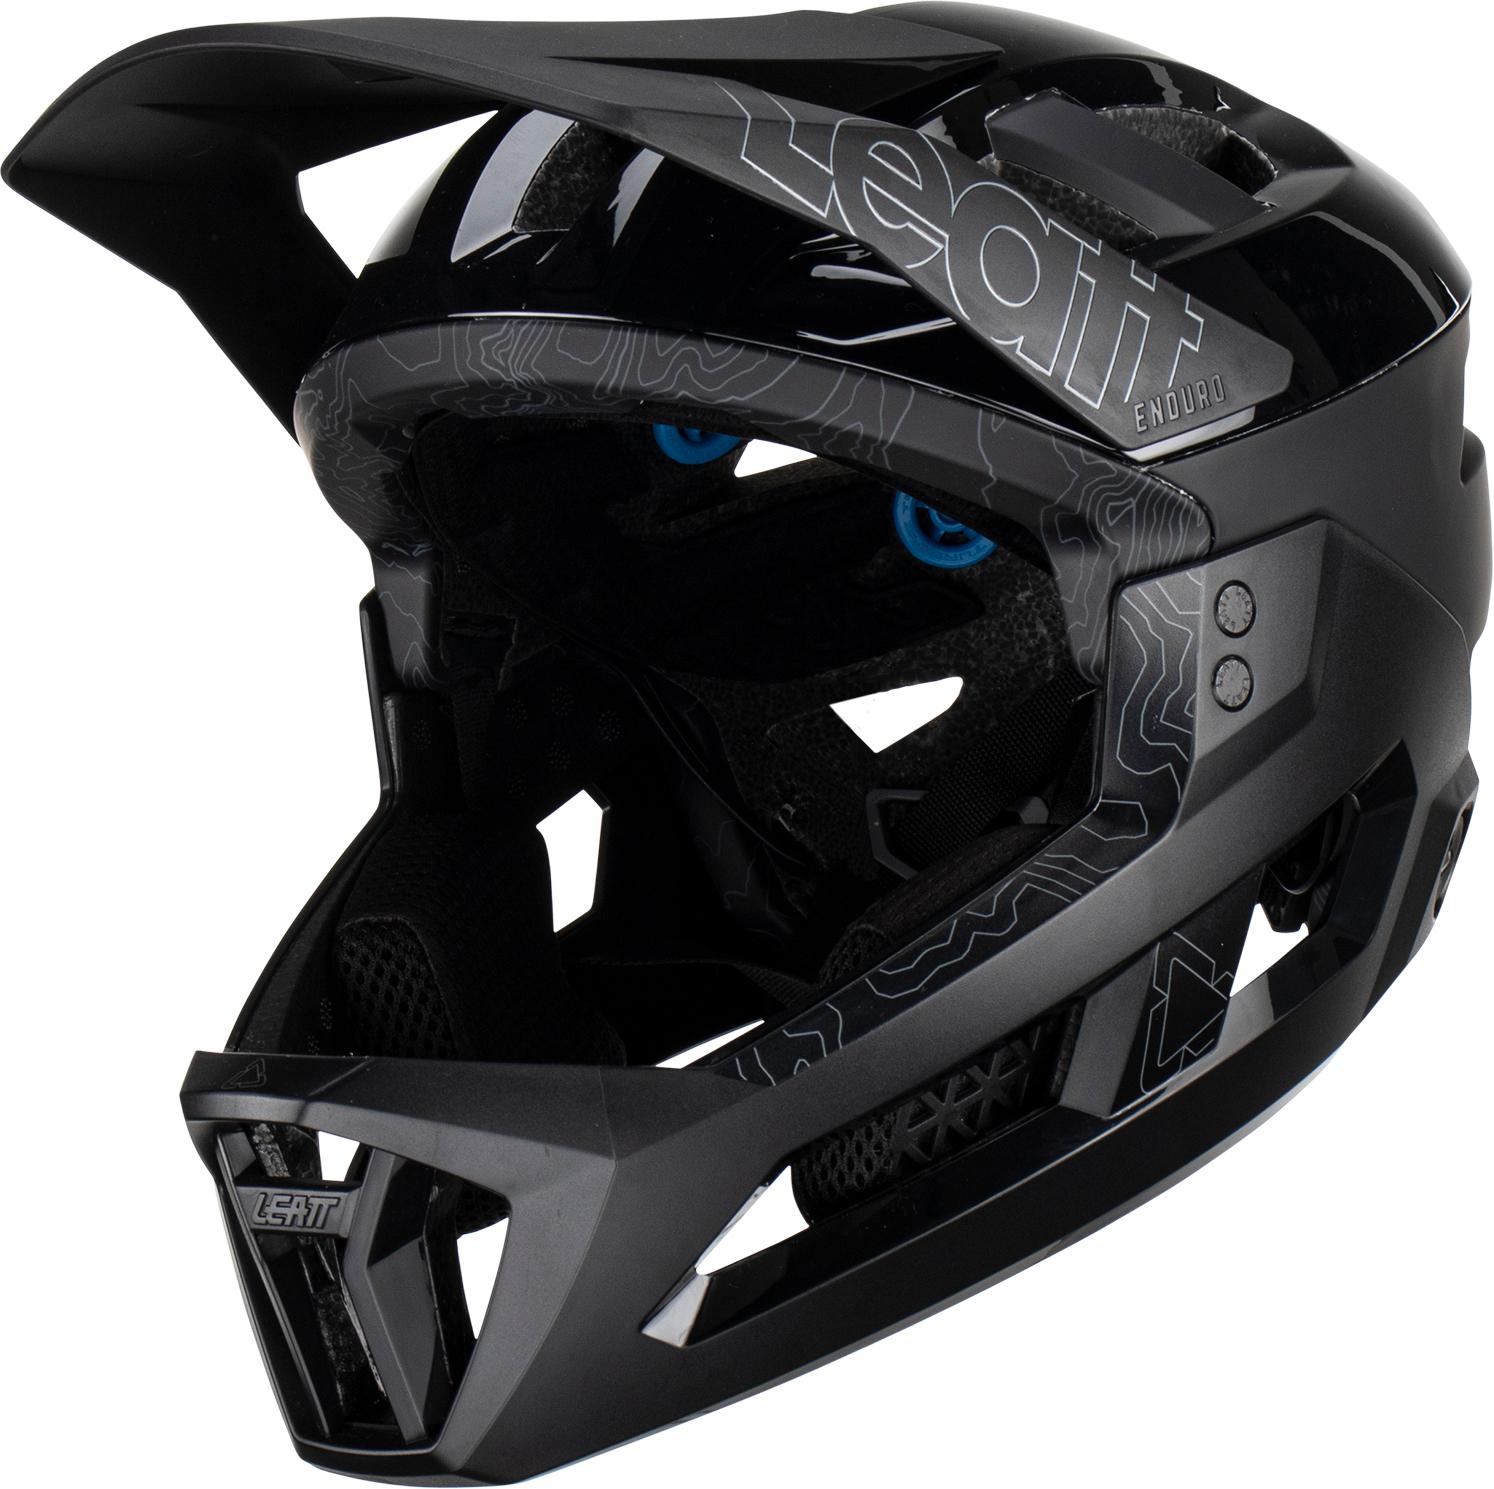 Leatt Mtb Enduro 3.0 Helmet - Stealth